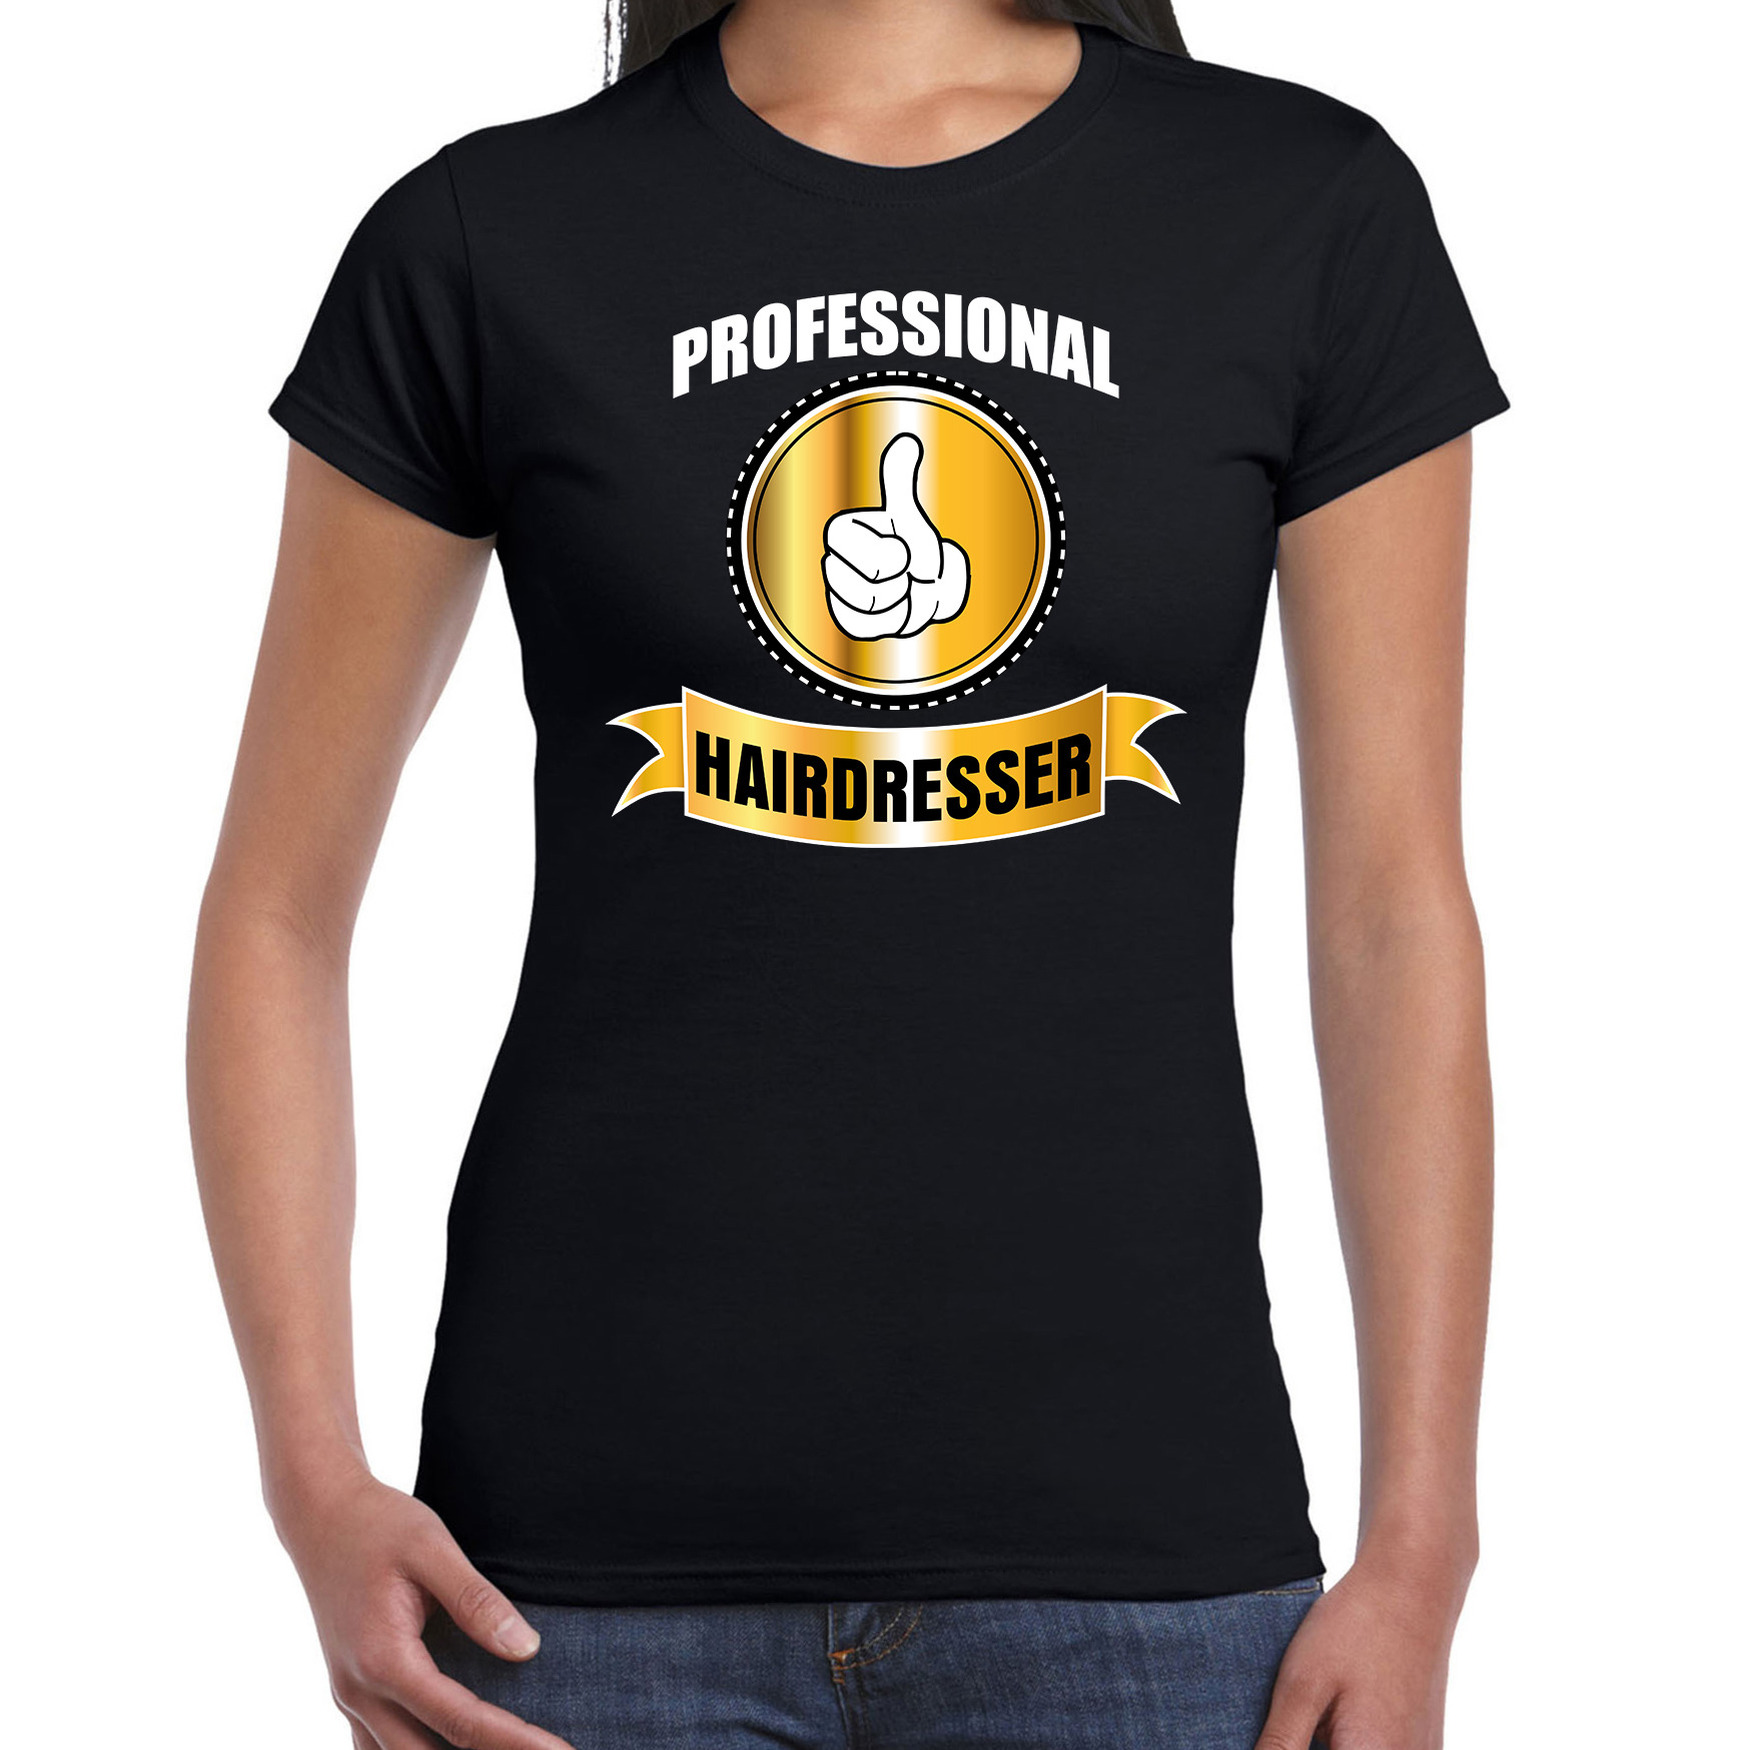 Professional hairdresser-professionele kapster t-shirt zwart dames Kapster cadeau shirt